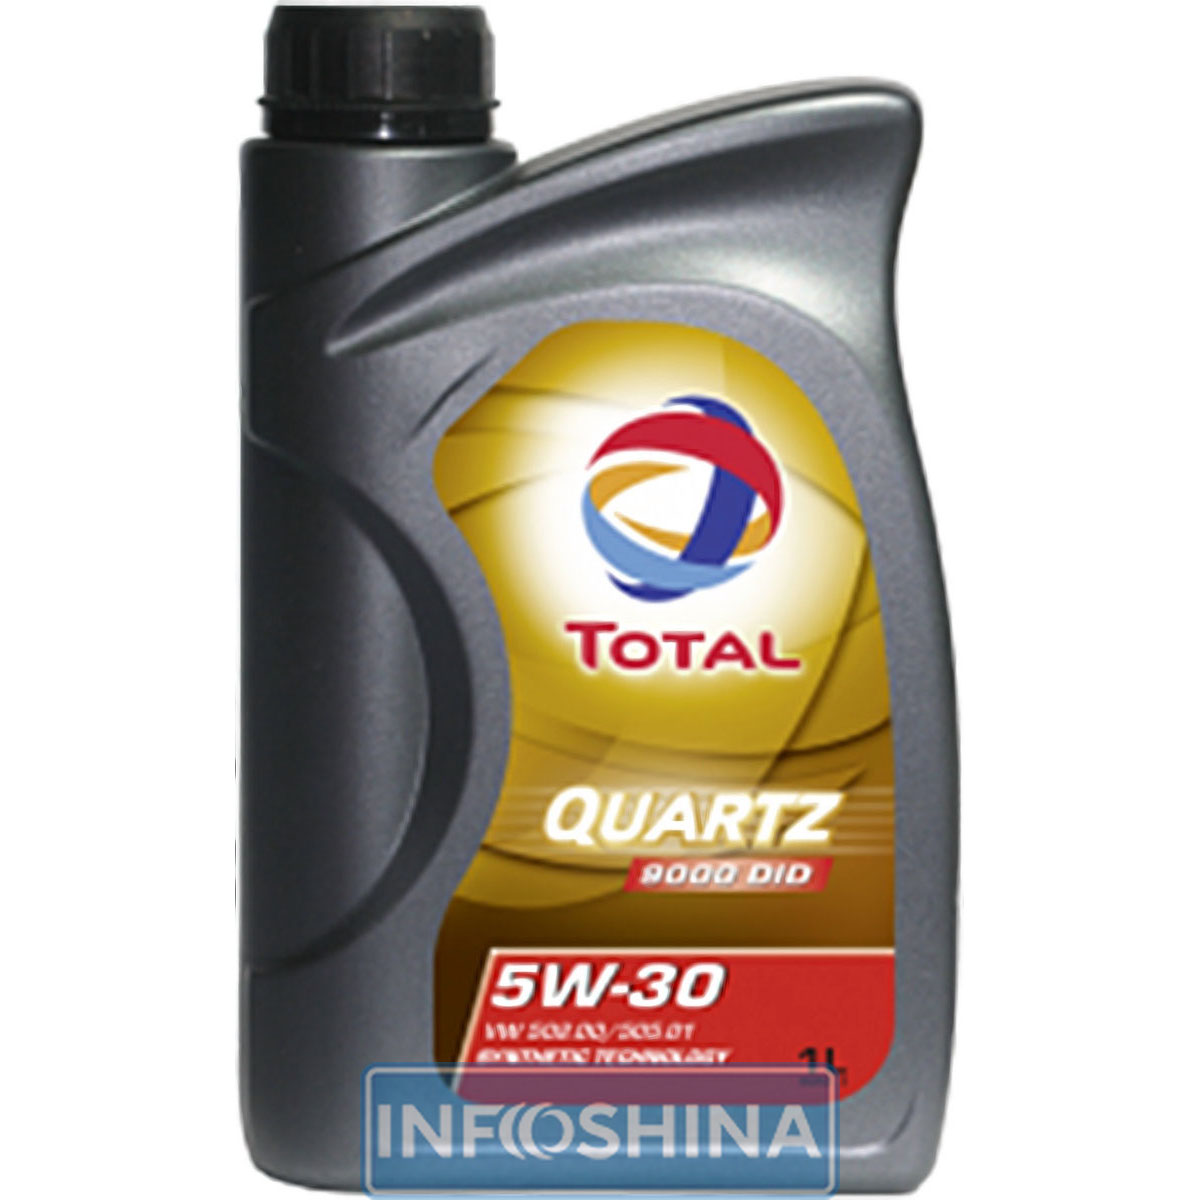 Купить масло Total Quartz 9000 DID 5W-30 (1л)